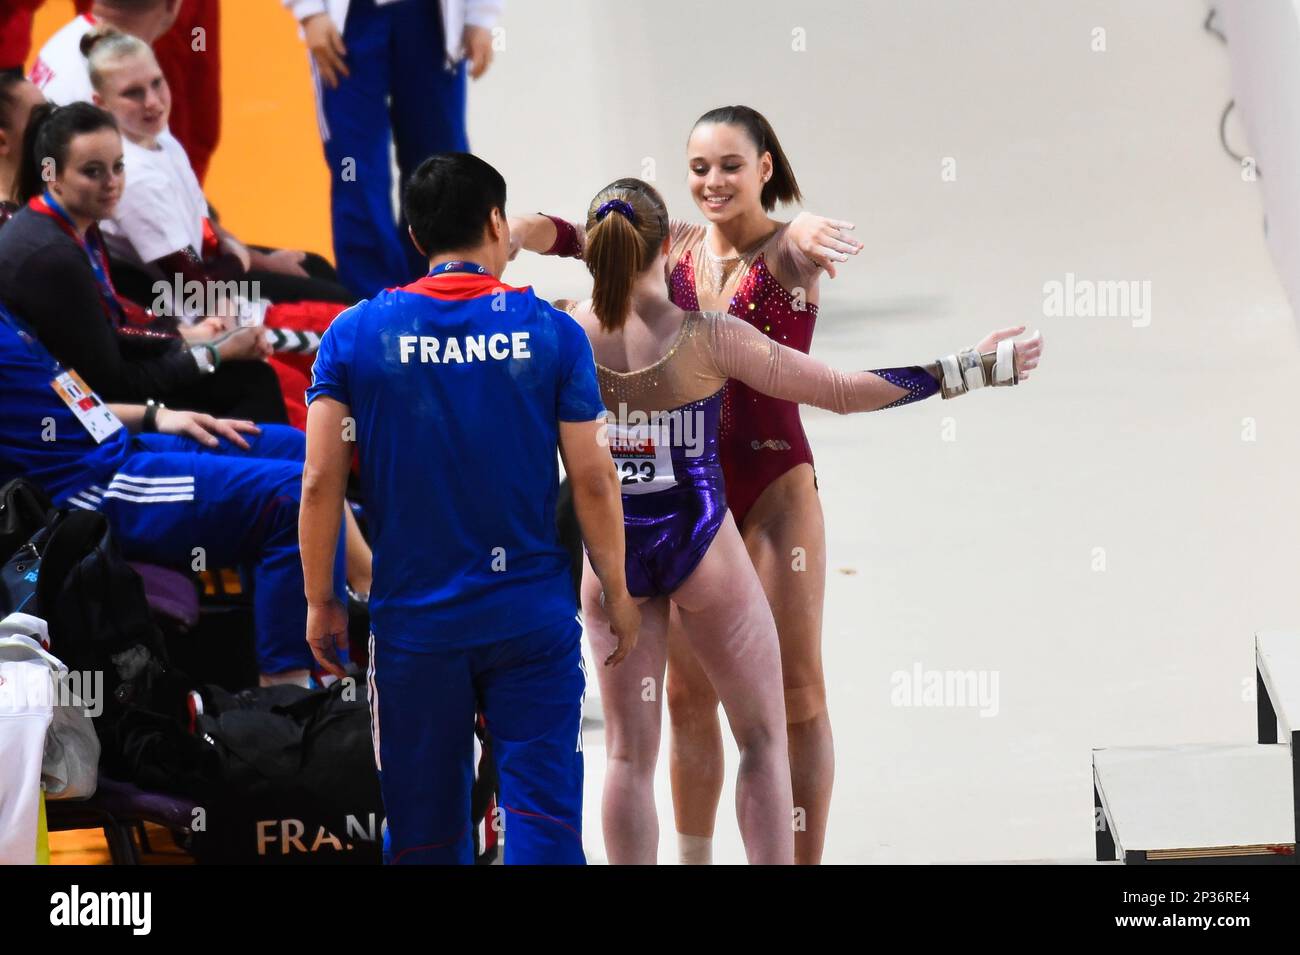 Les championnats de France de gymnastique artistique